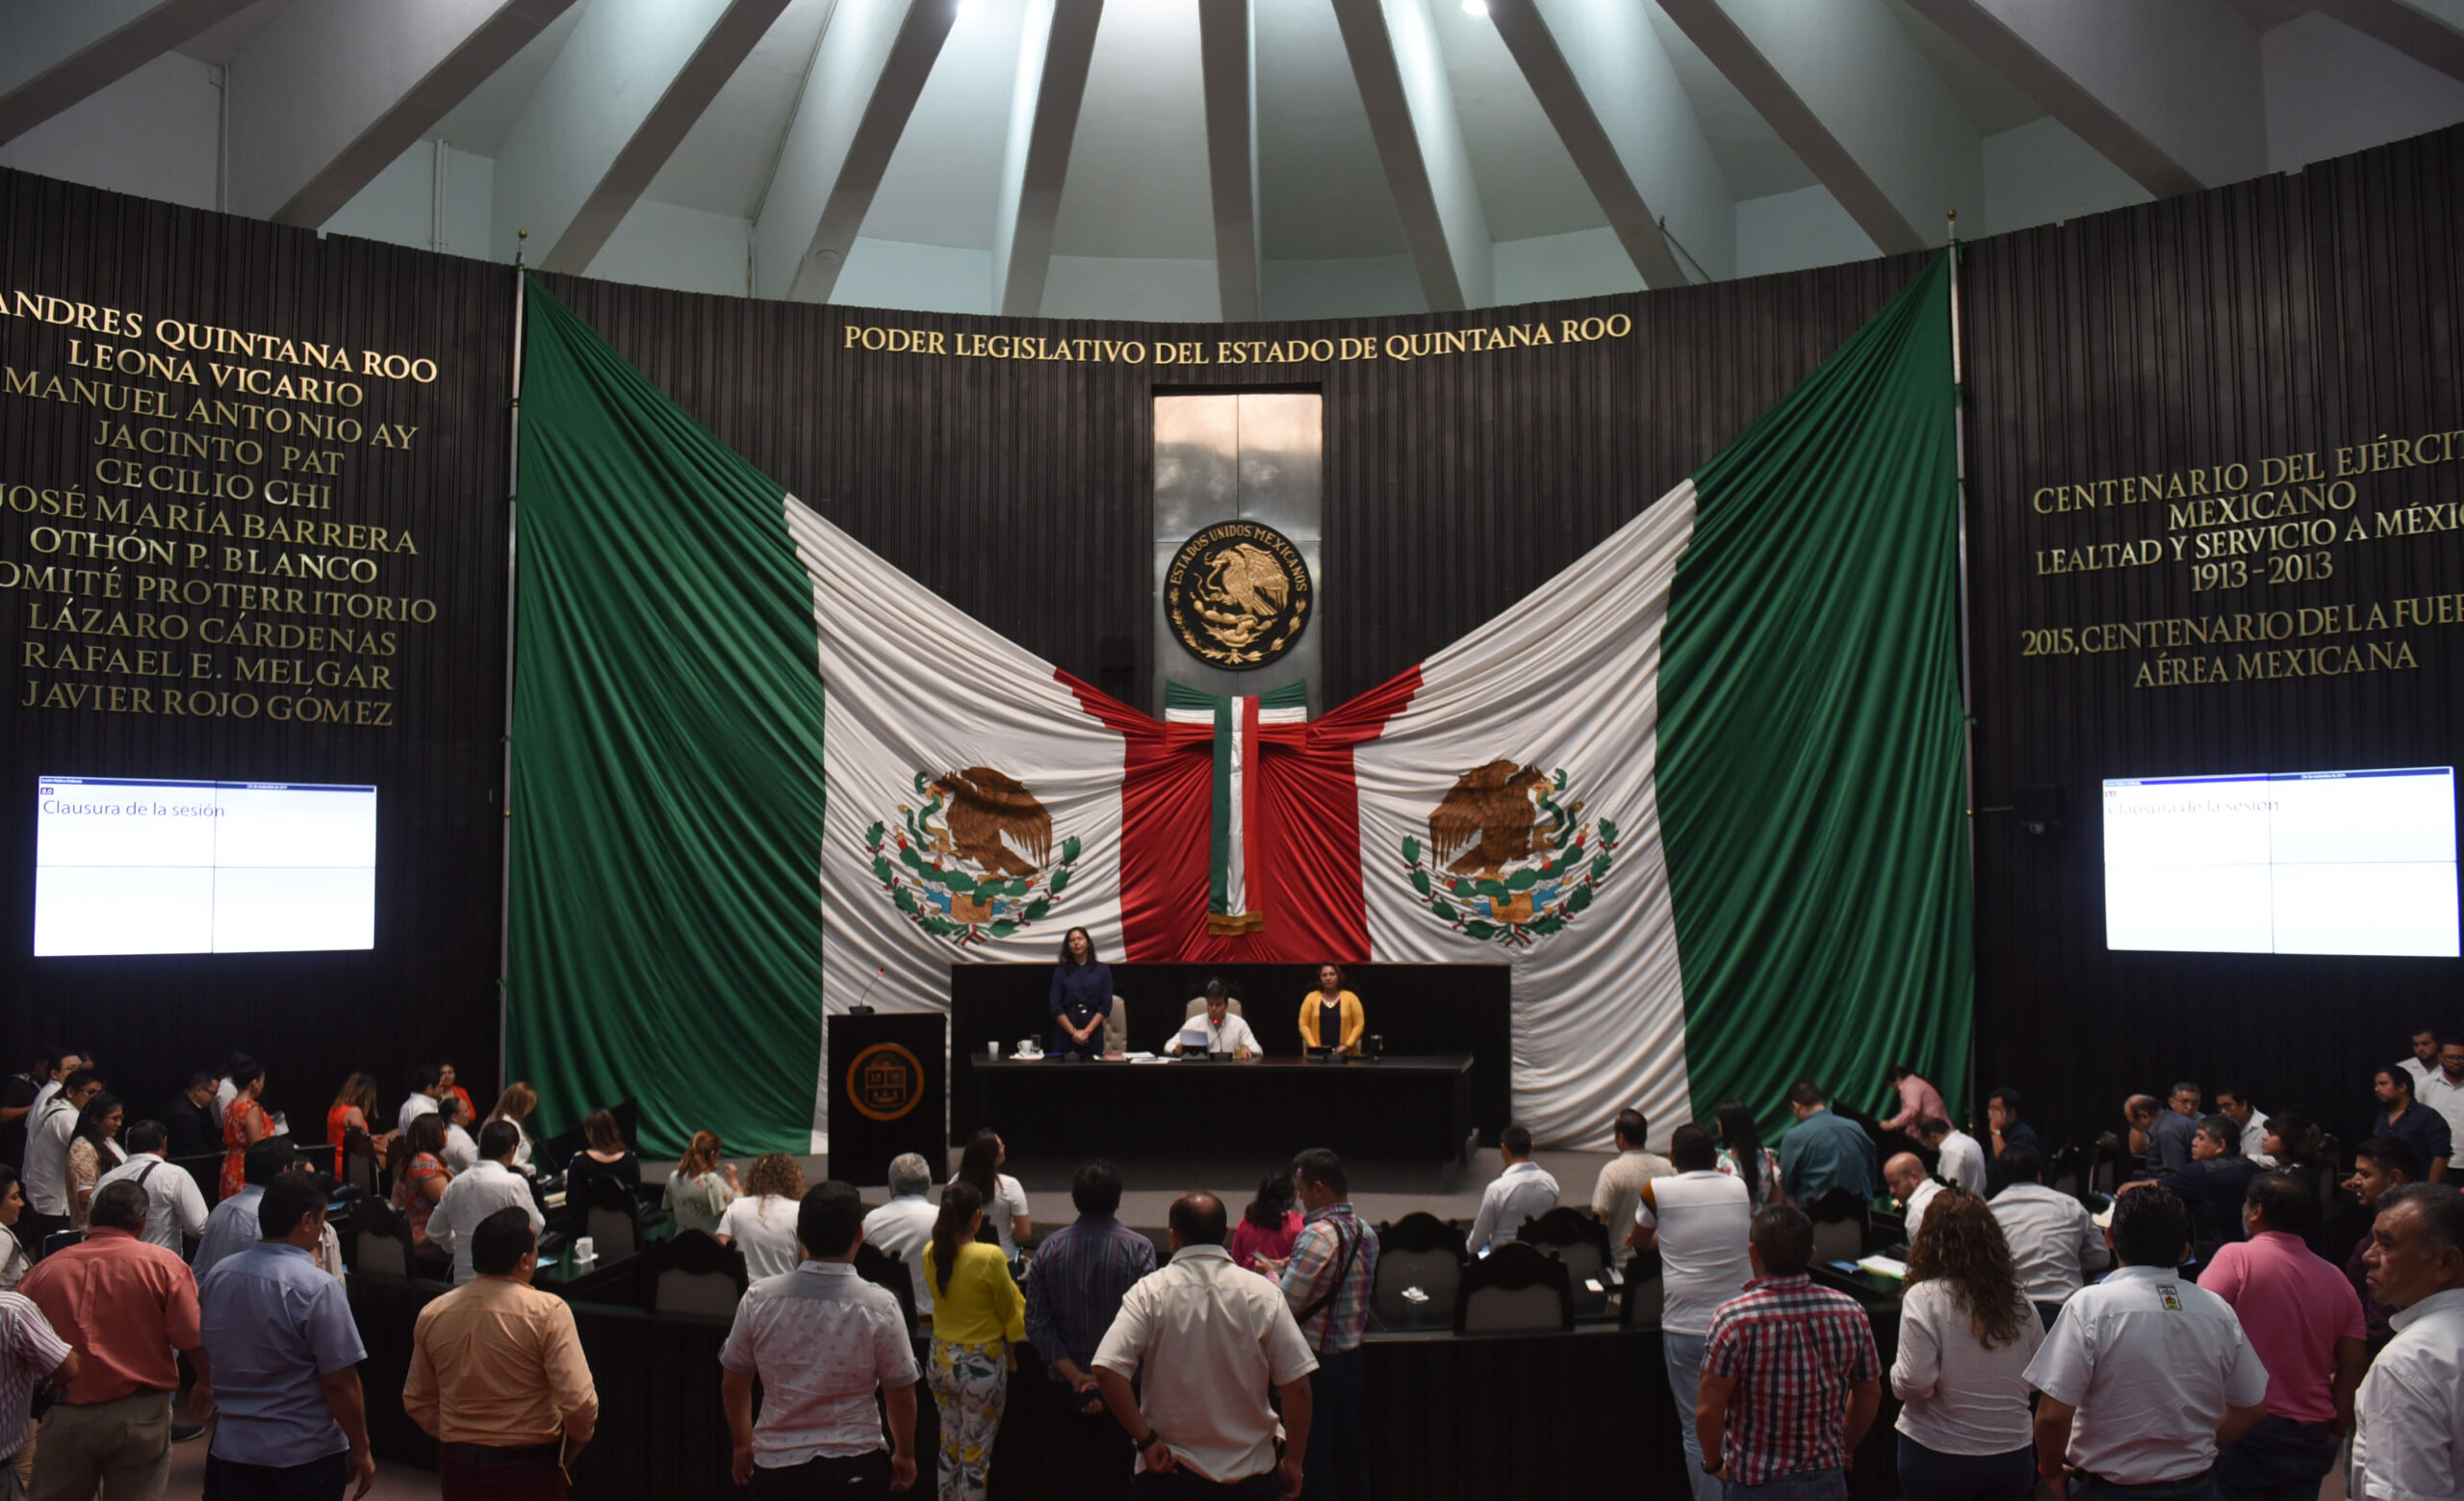 Por unanimidad, las diputadas y diputados del Congreso de Quintana Roo aprobaron declarar a la XVI Legislatura como “Primera Legislatura de la Paridad”